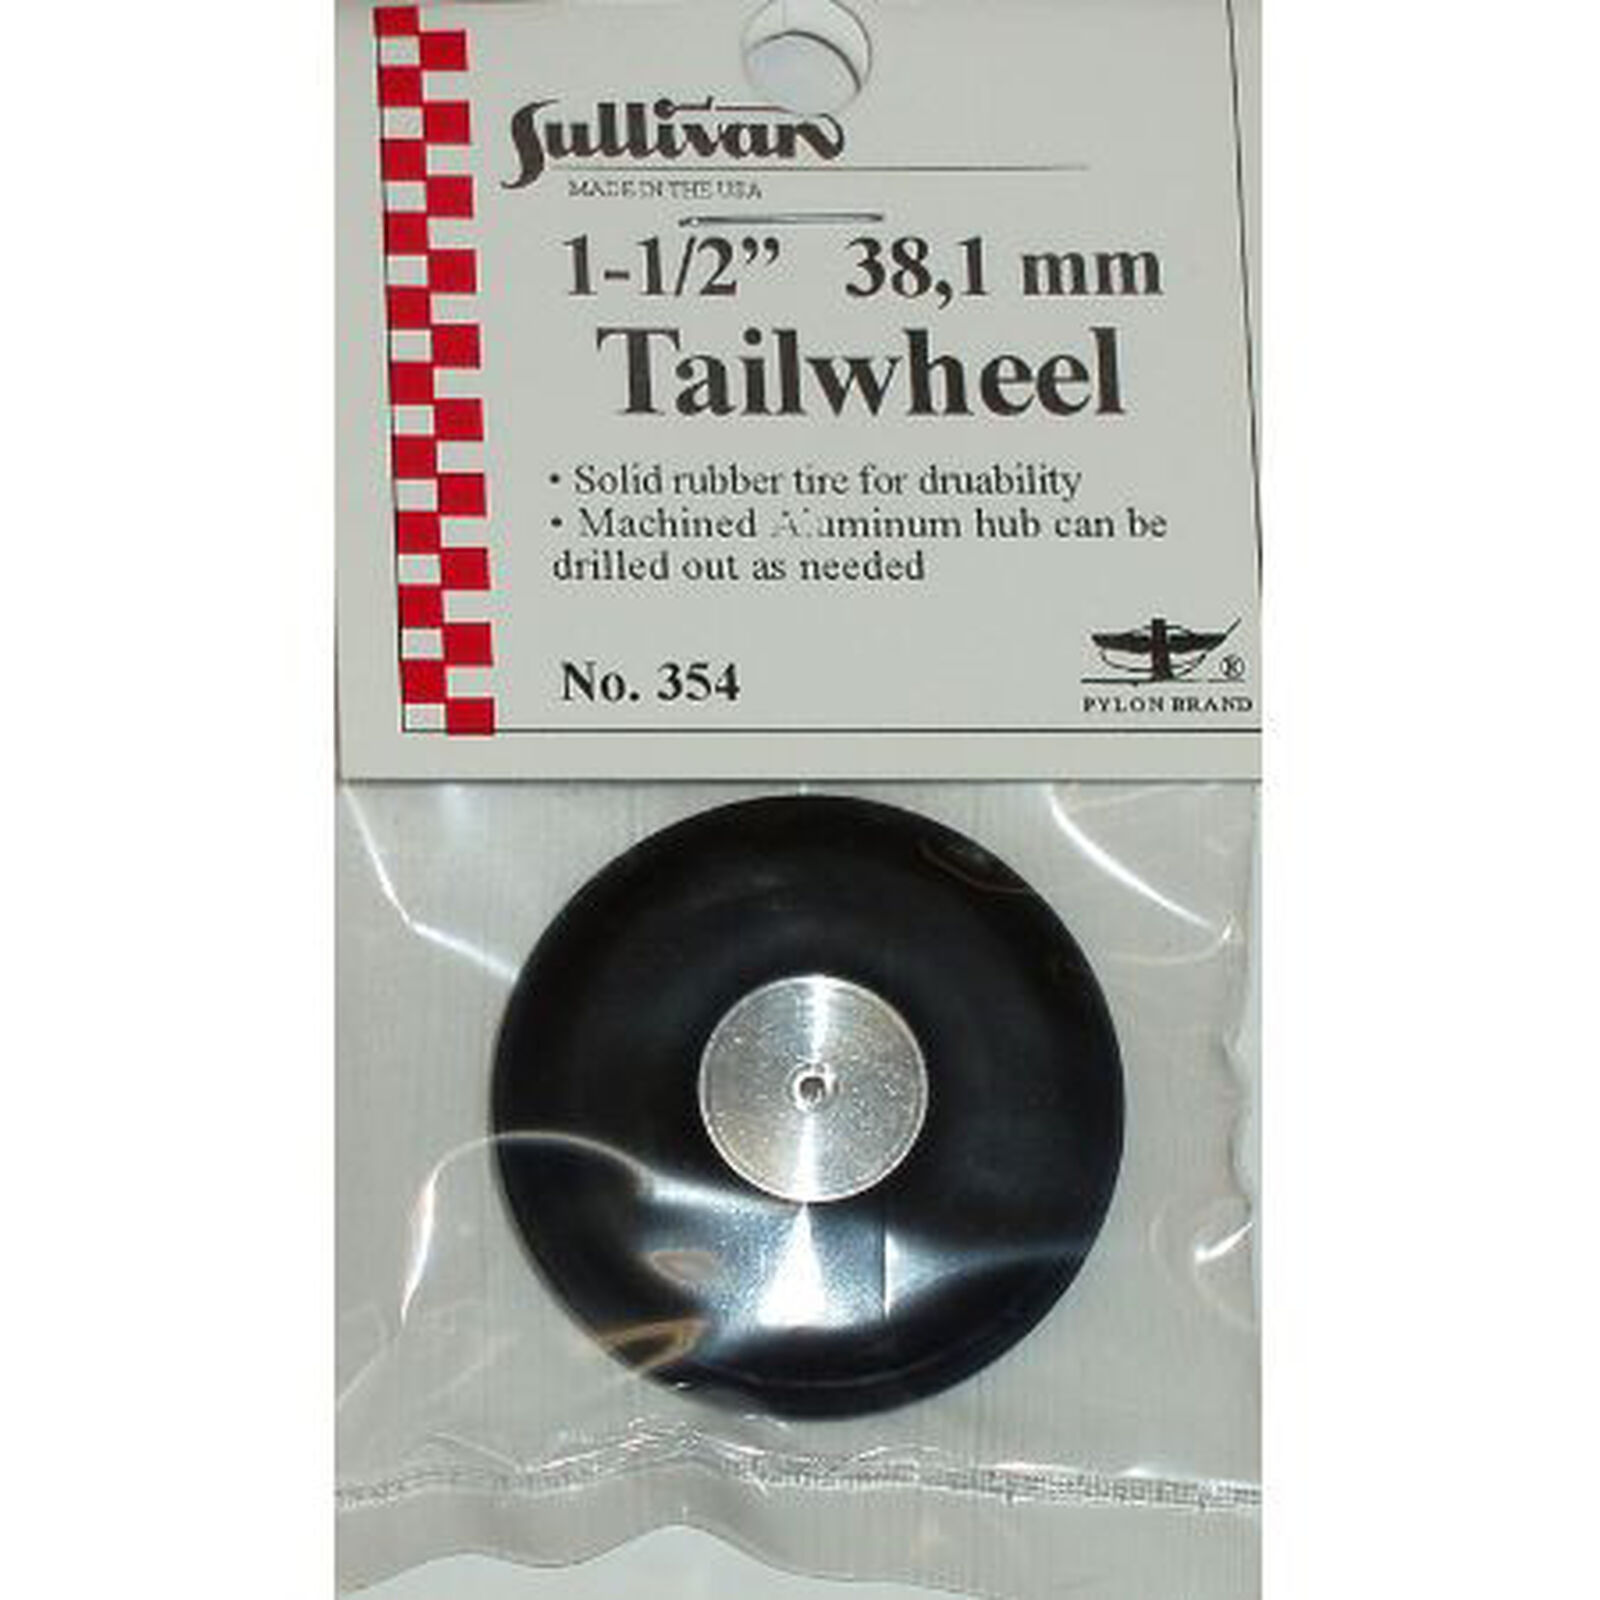 Tailwheel, 1-1/2"